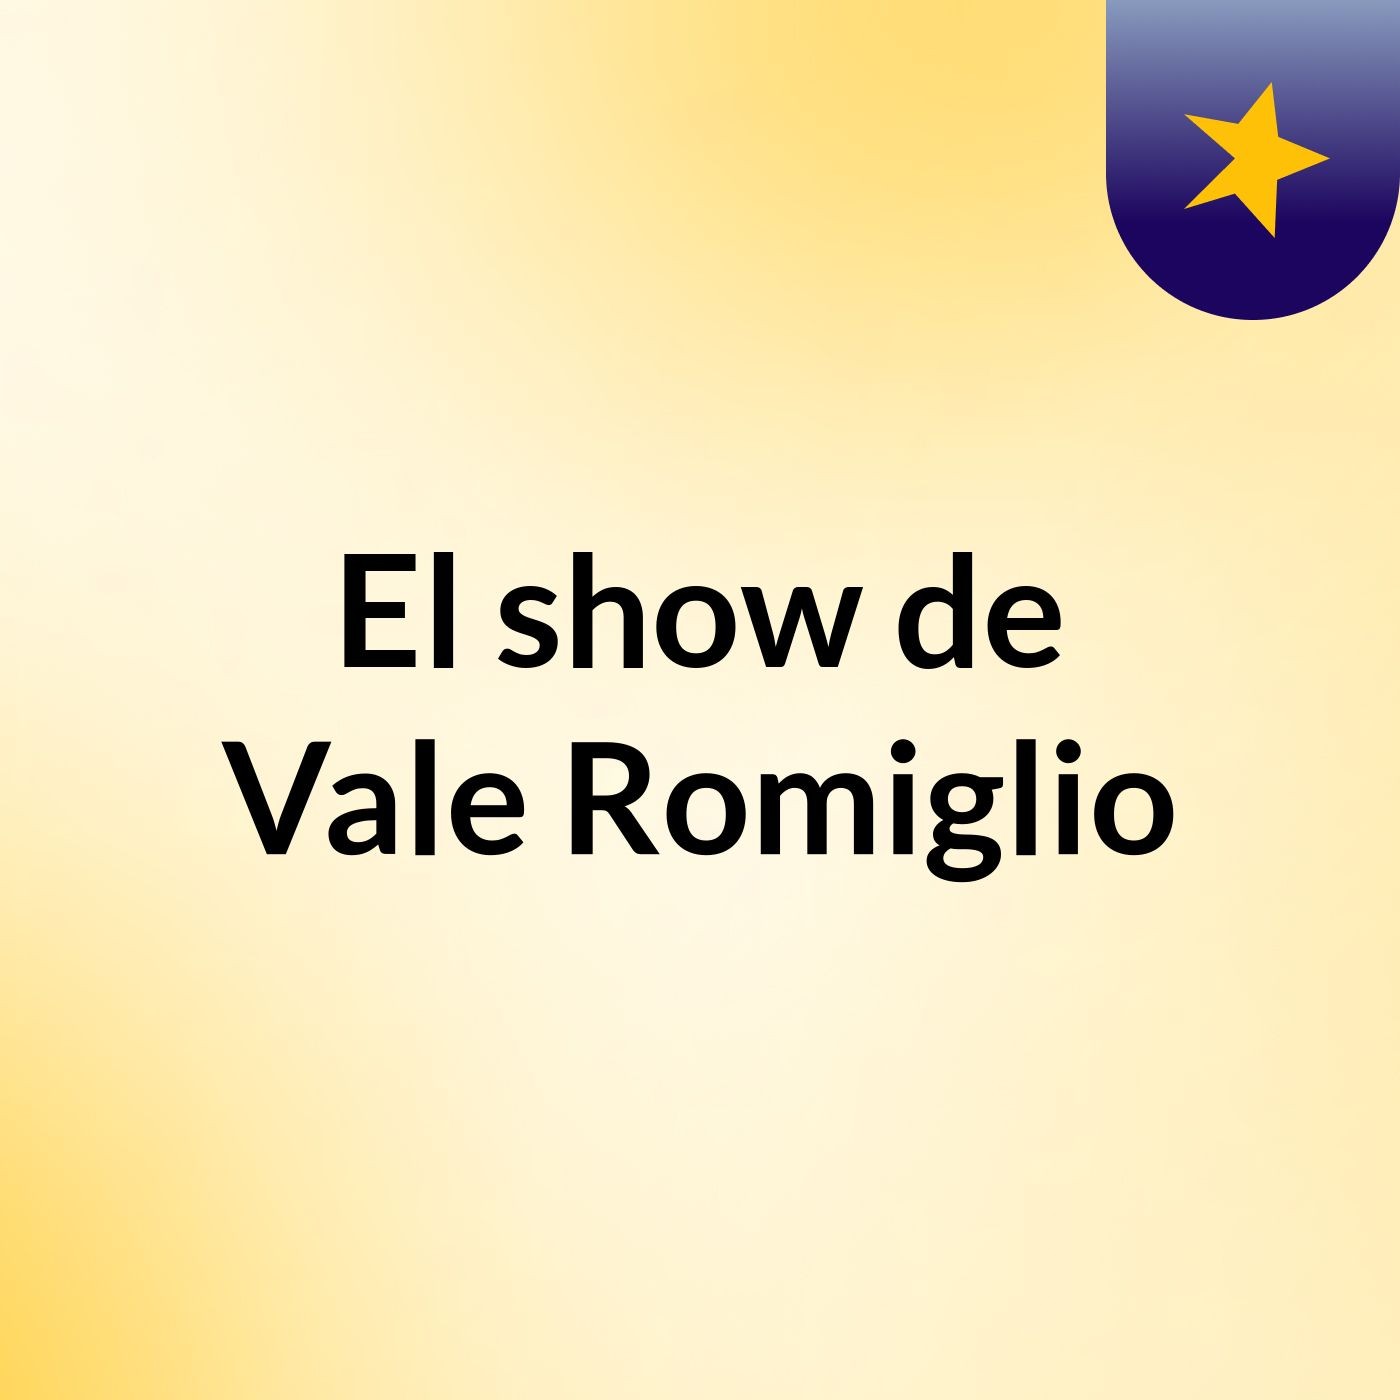 El show de Vale Romiglio